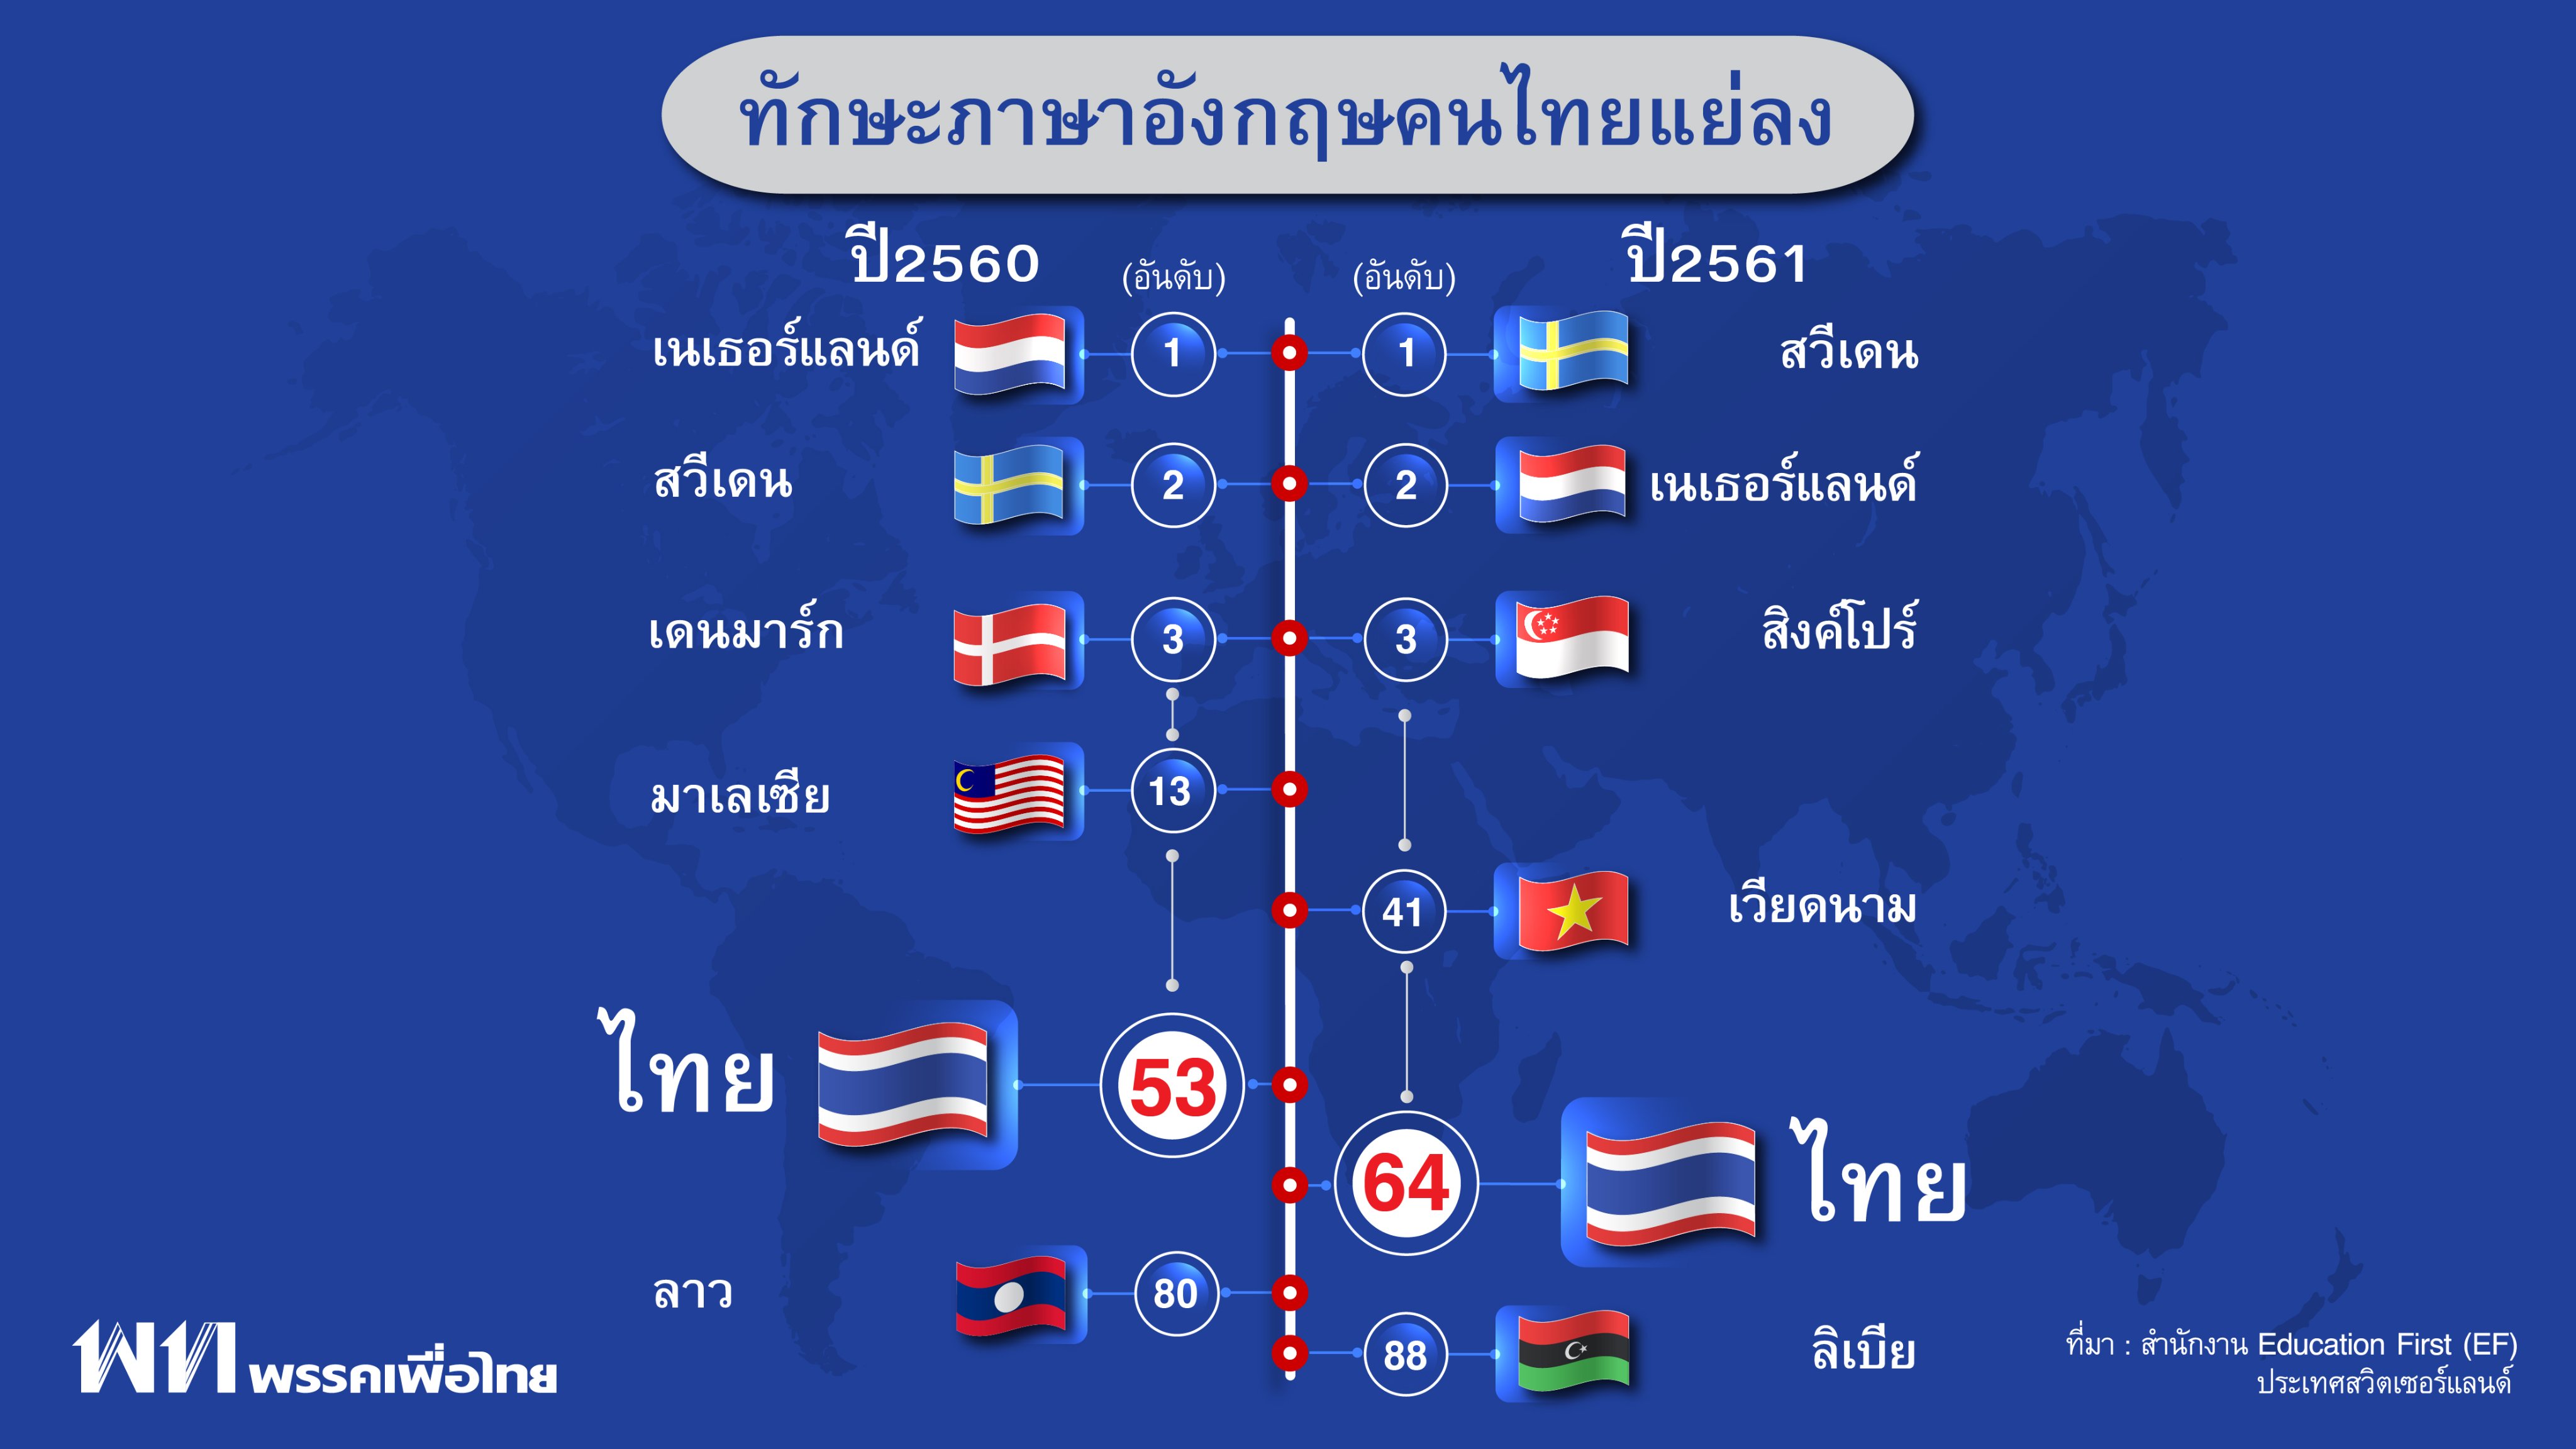 พรรคเพื่อไทย Pheu Thai Party On Twitter: 